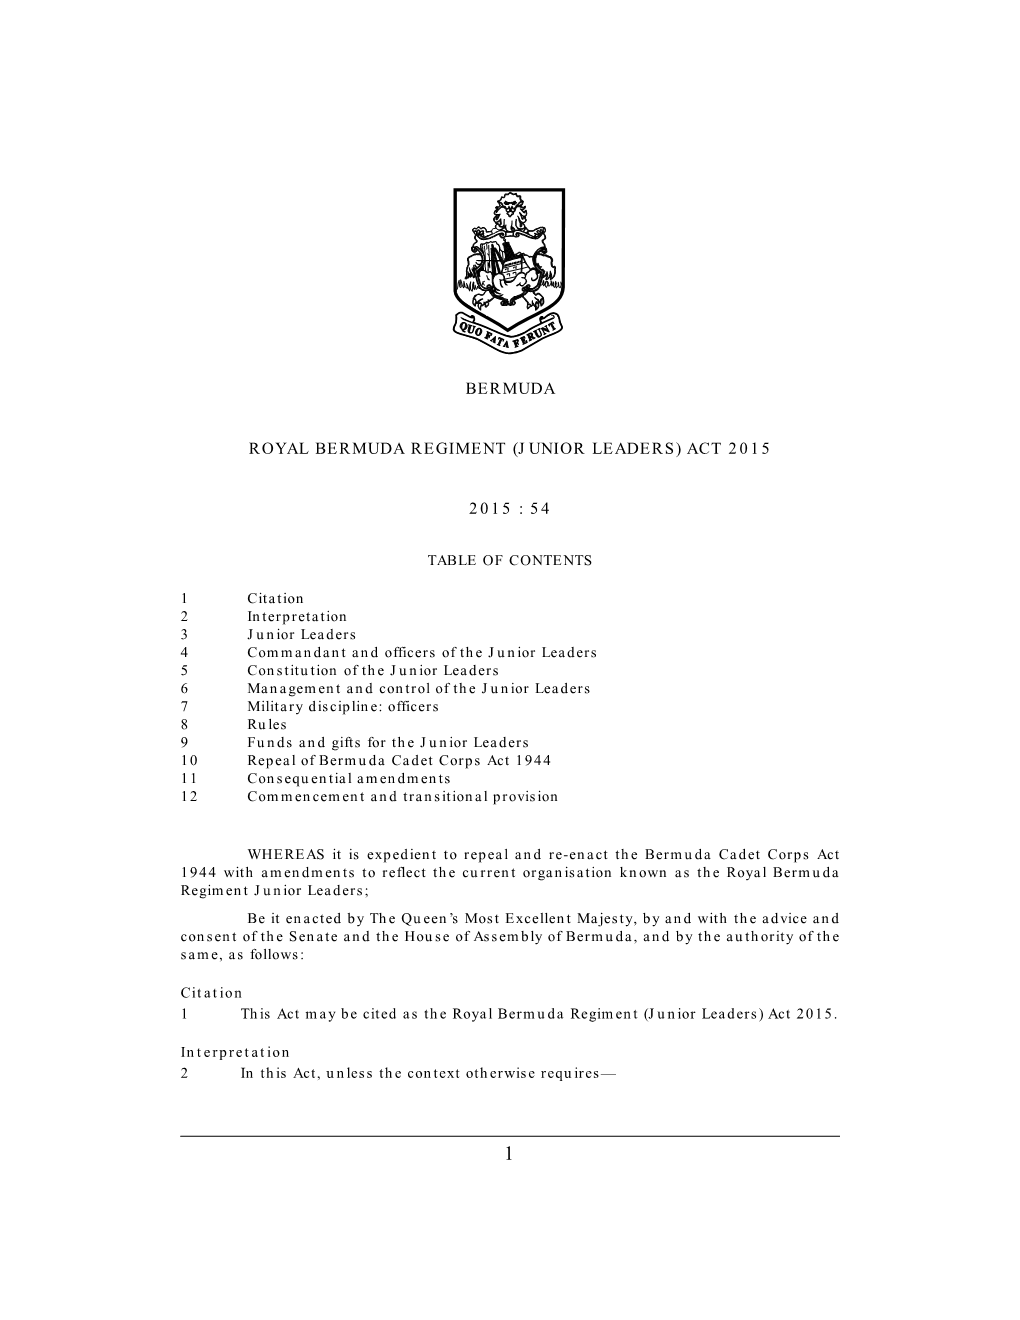 Royal Bermuda Regiment (Junior Leaders) Act 2015